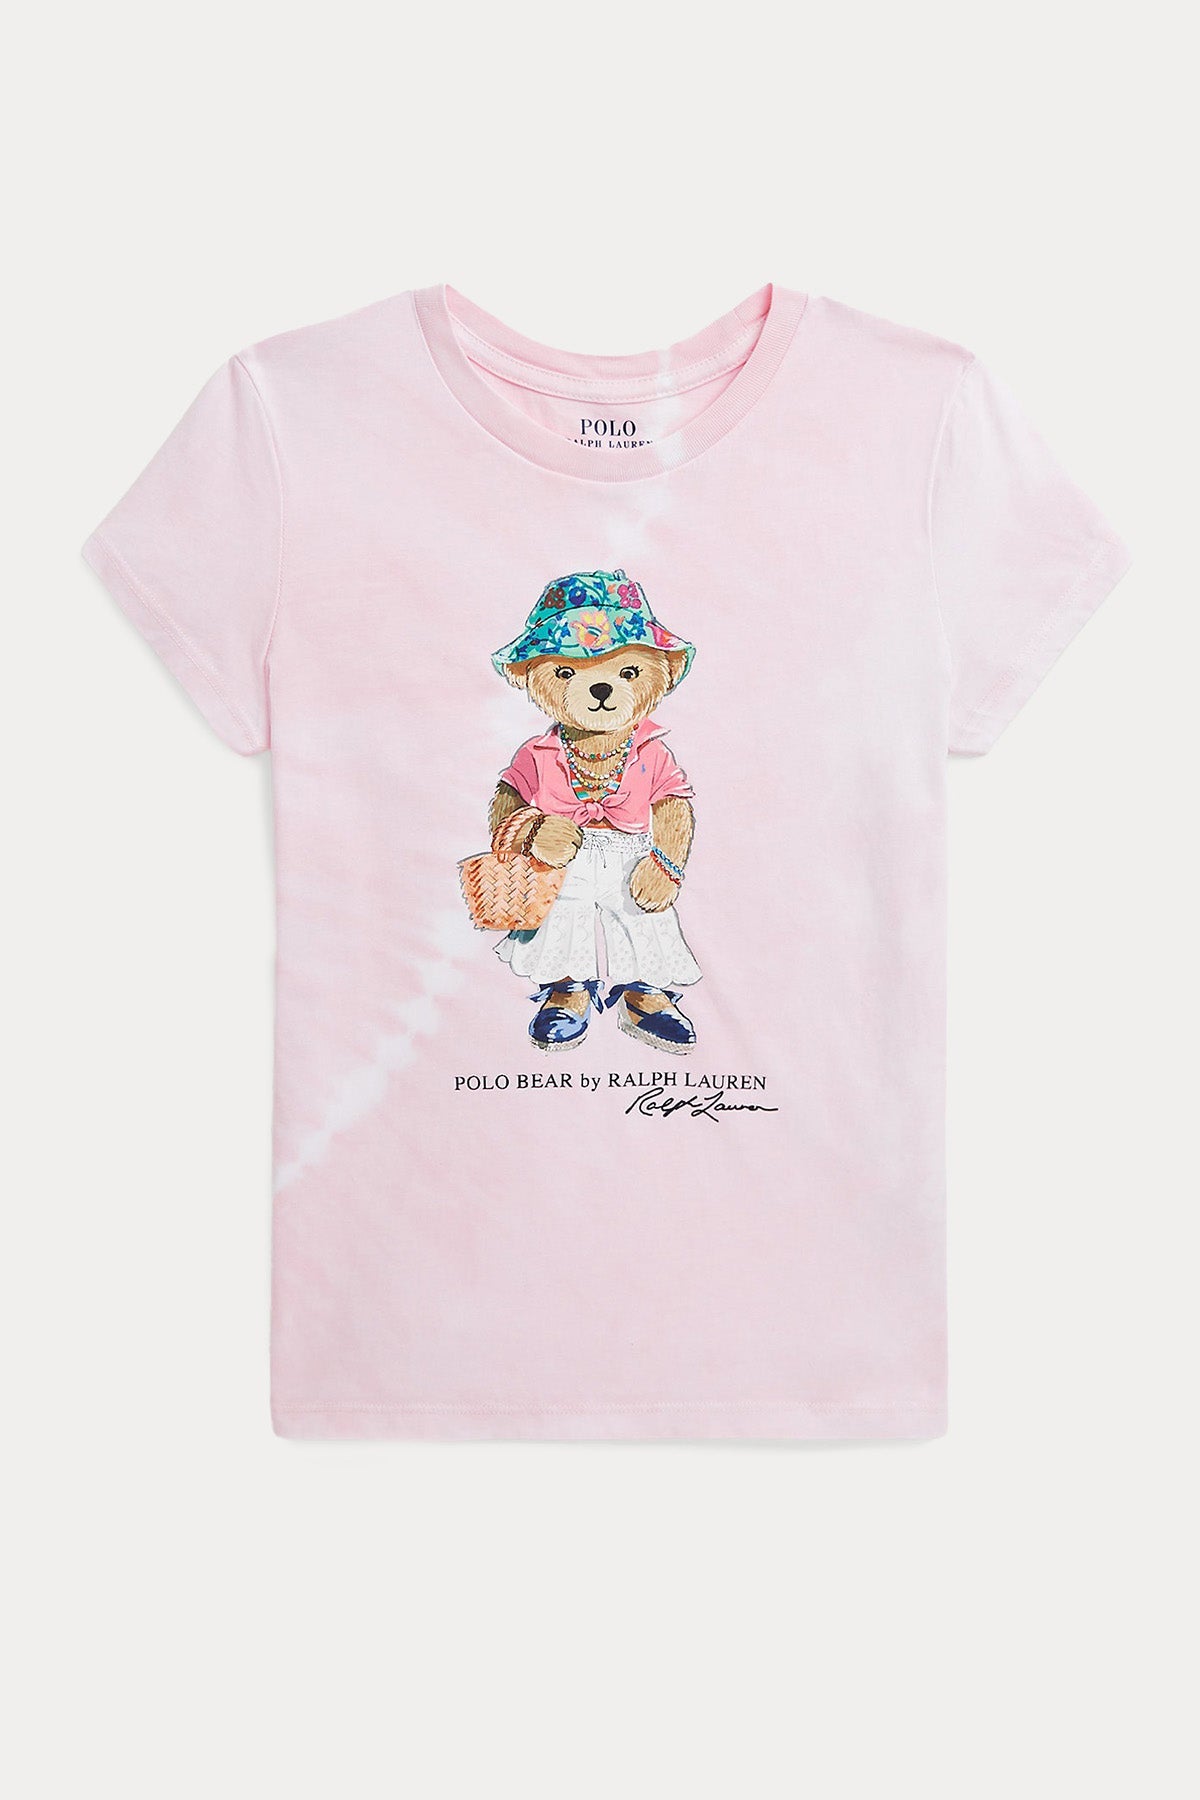 Polo Ralph Lauren Kids S-M Beden Kız Çocuk Polo Bear T-shirt